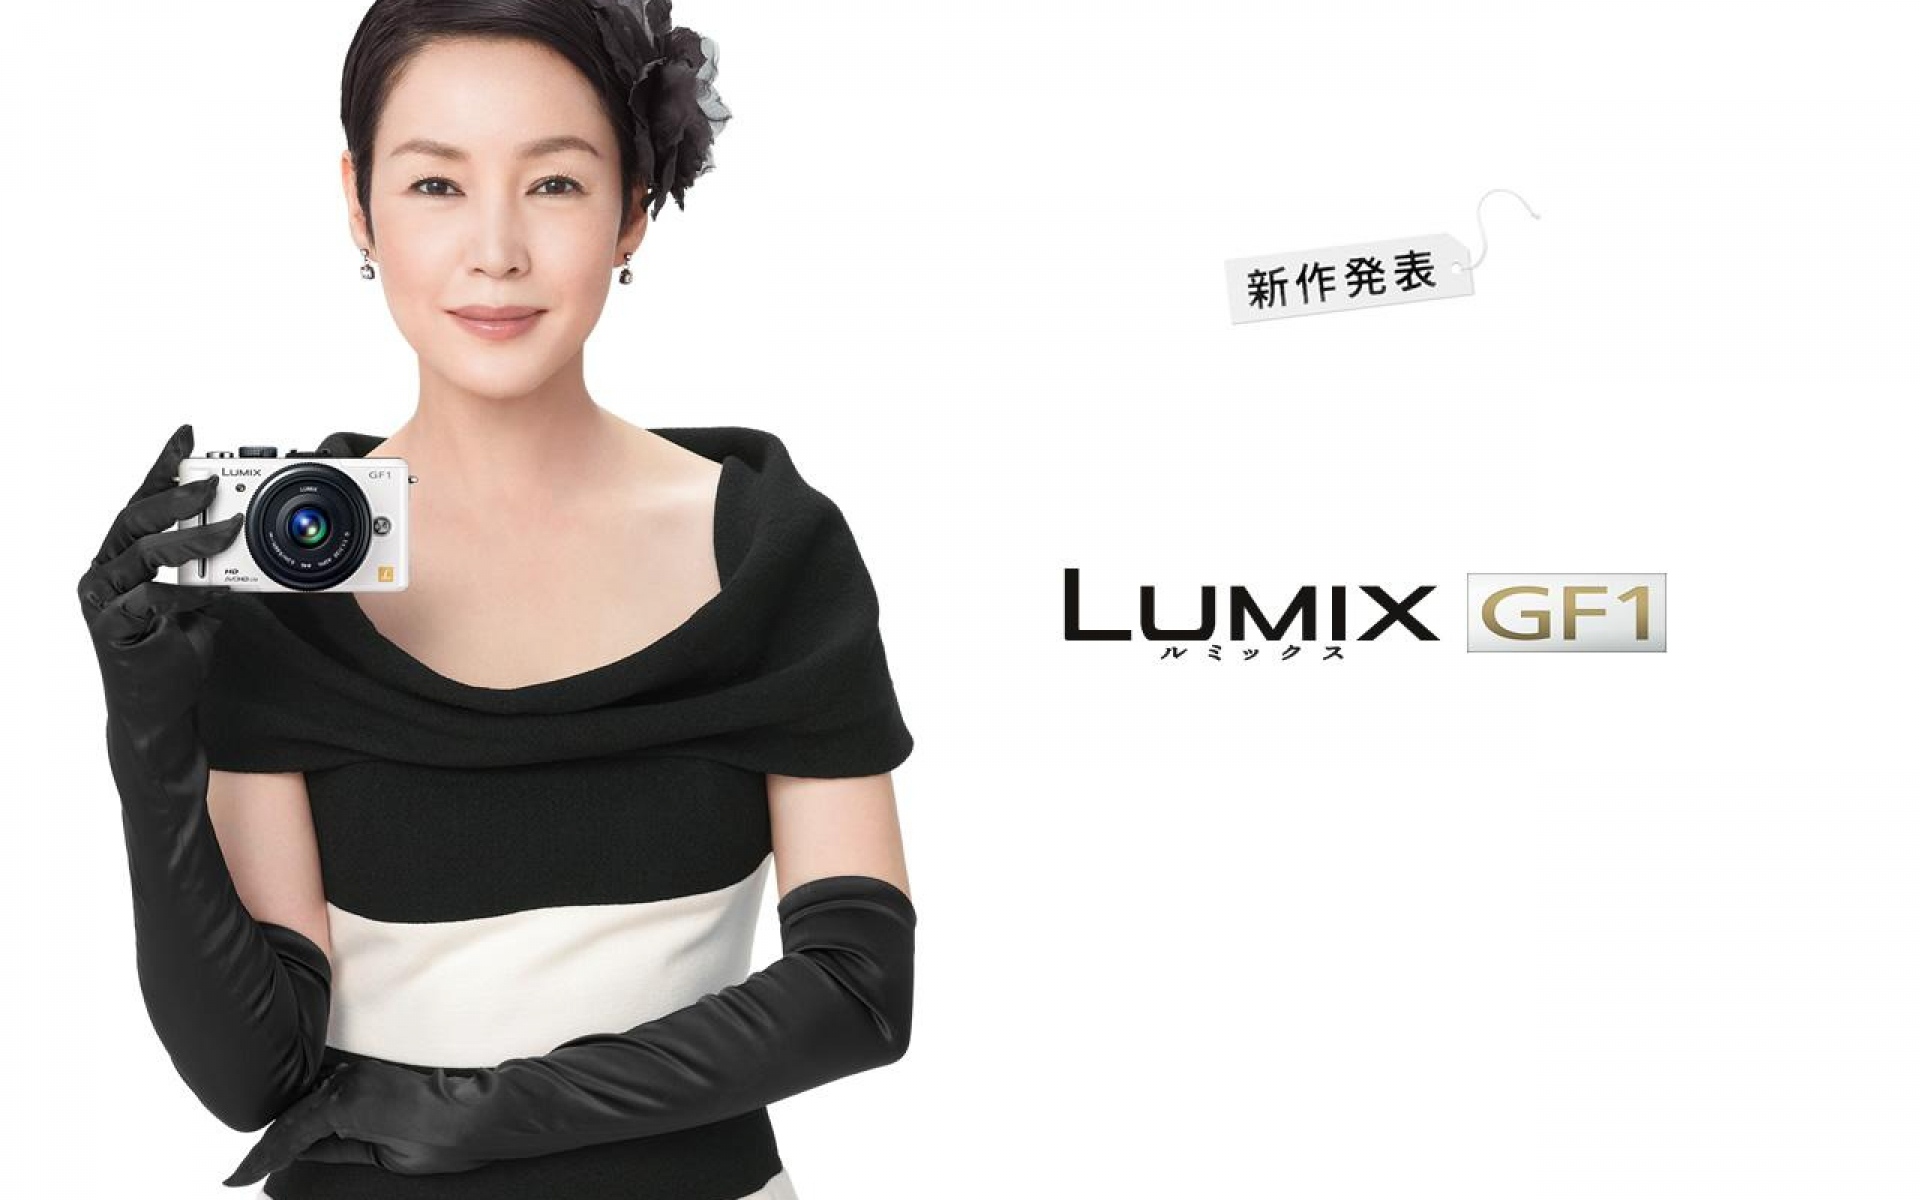 Картинки Lumix gf1, panasonic, девушка, улыбка фото и обои на рабочий стол